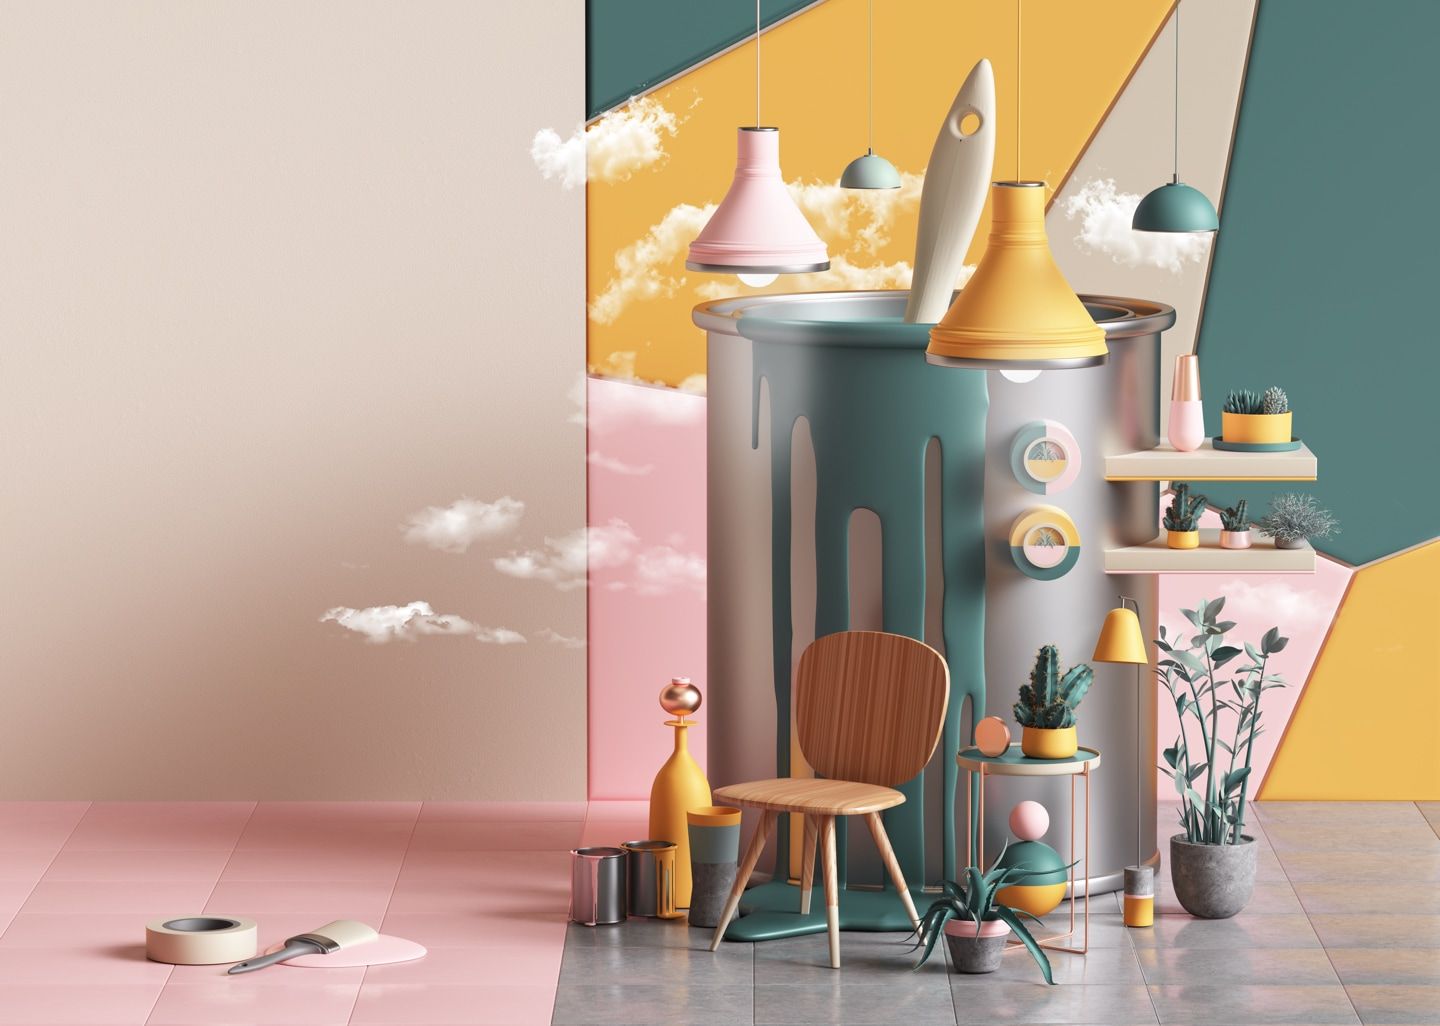 I trend di interior decoration 2019 secondo Pinterest